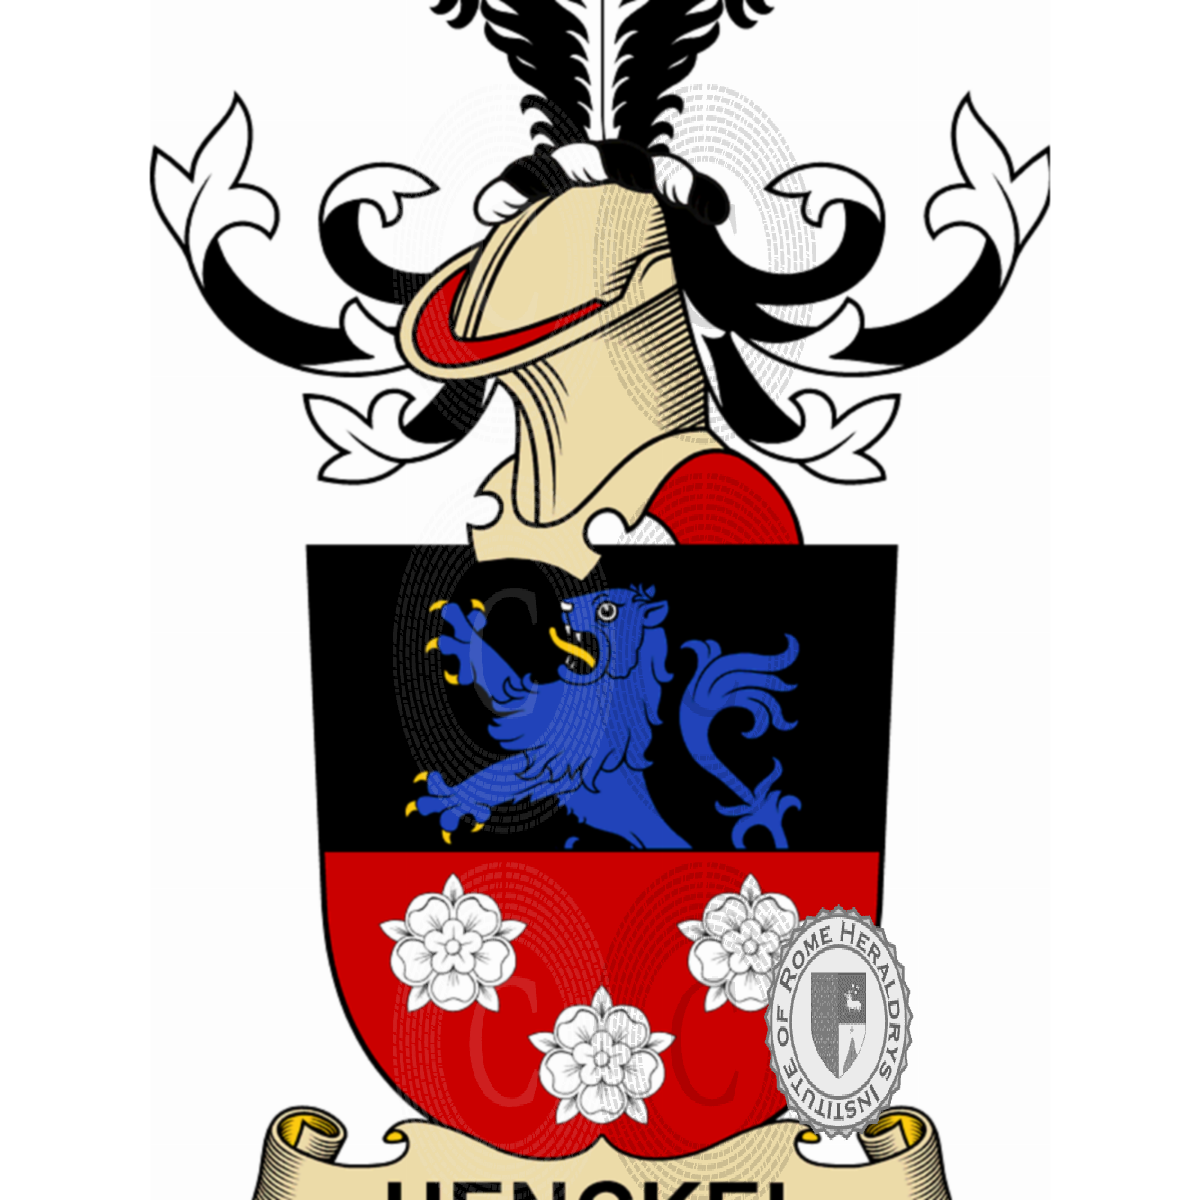 Escudo de la familiaHenckel, Henckel,Henckel de Donnersmarck